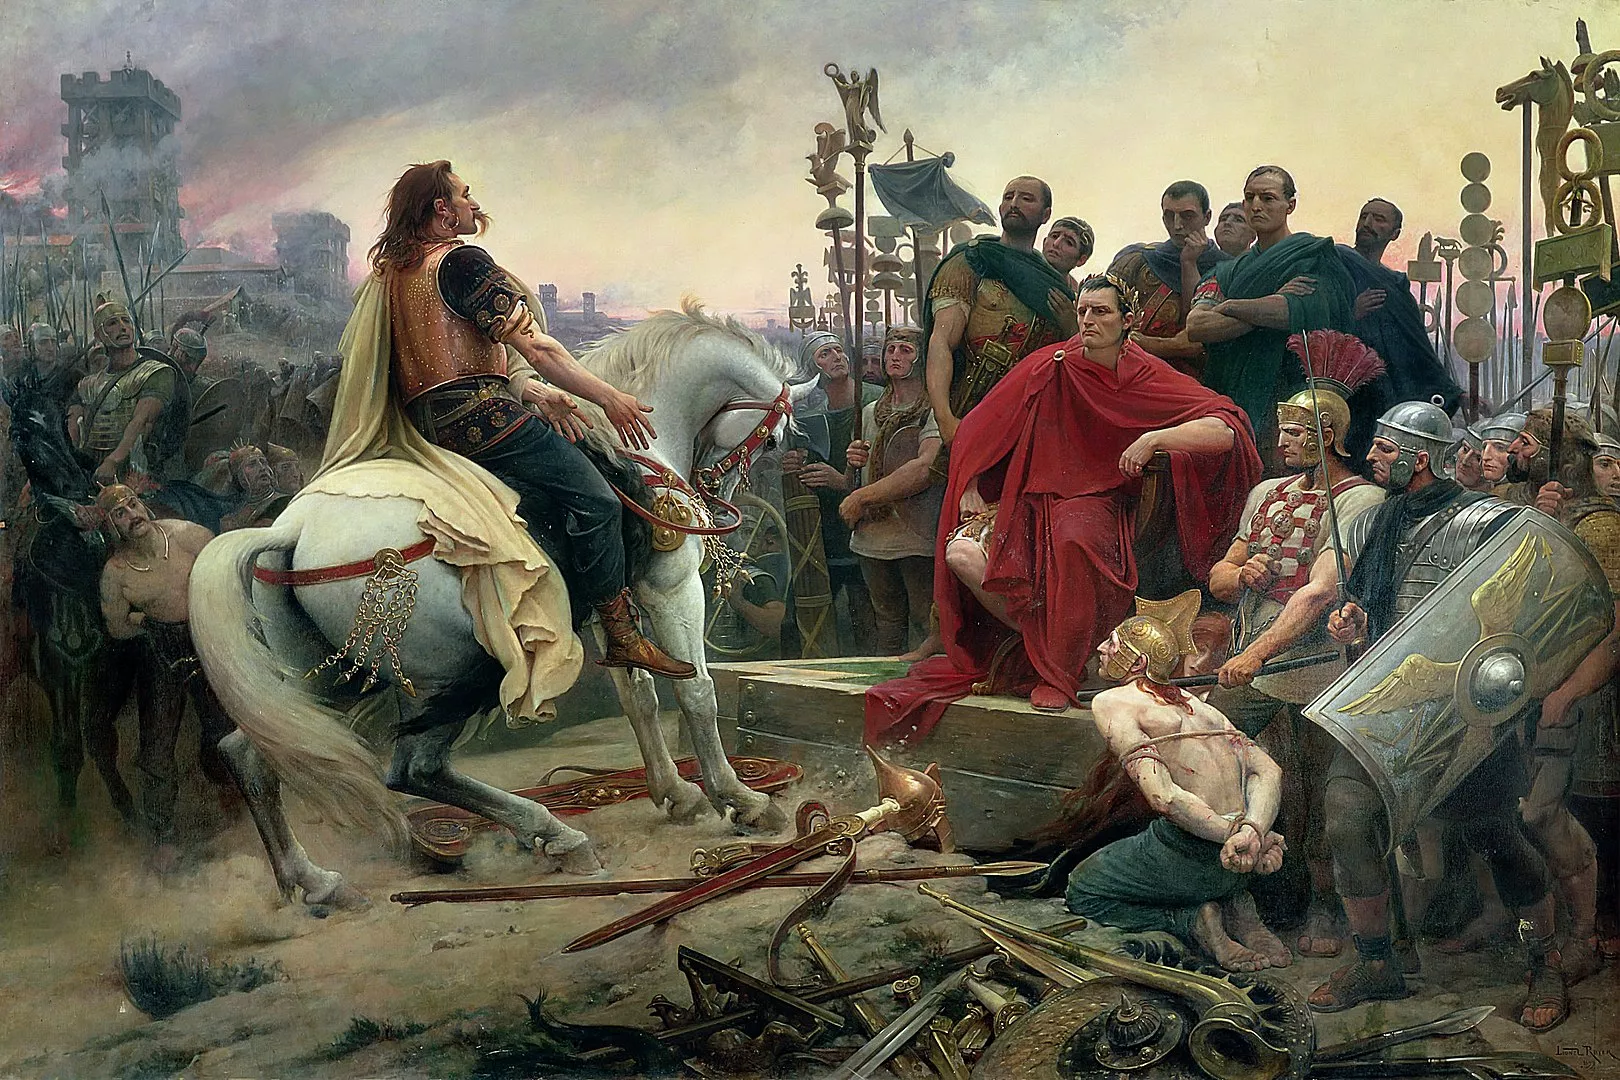 L’única tribu celta que resistí l’embat romà fou la liderada per Vercingetòrix, però, al final, el líder gal va haver de rendir-se davant Juli Cèsar, escena que recull aquest quadre del 1855